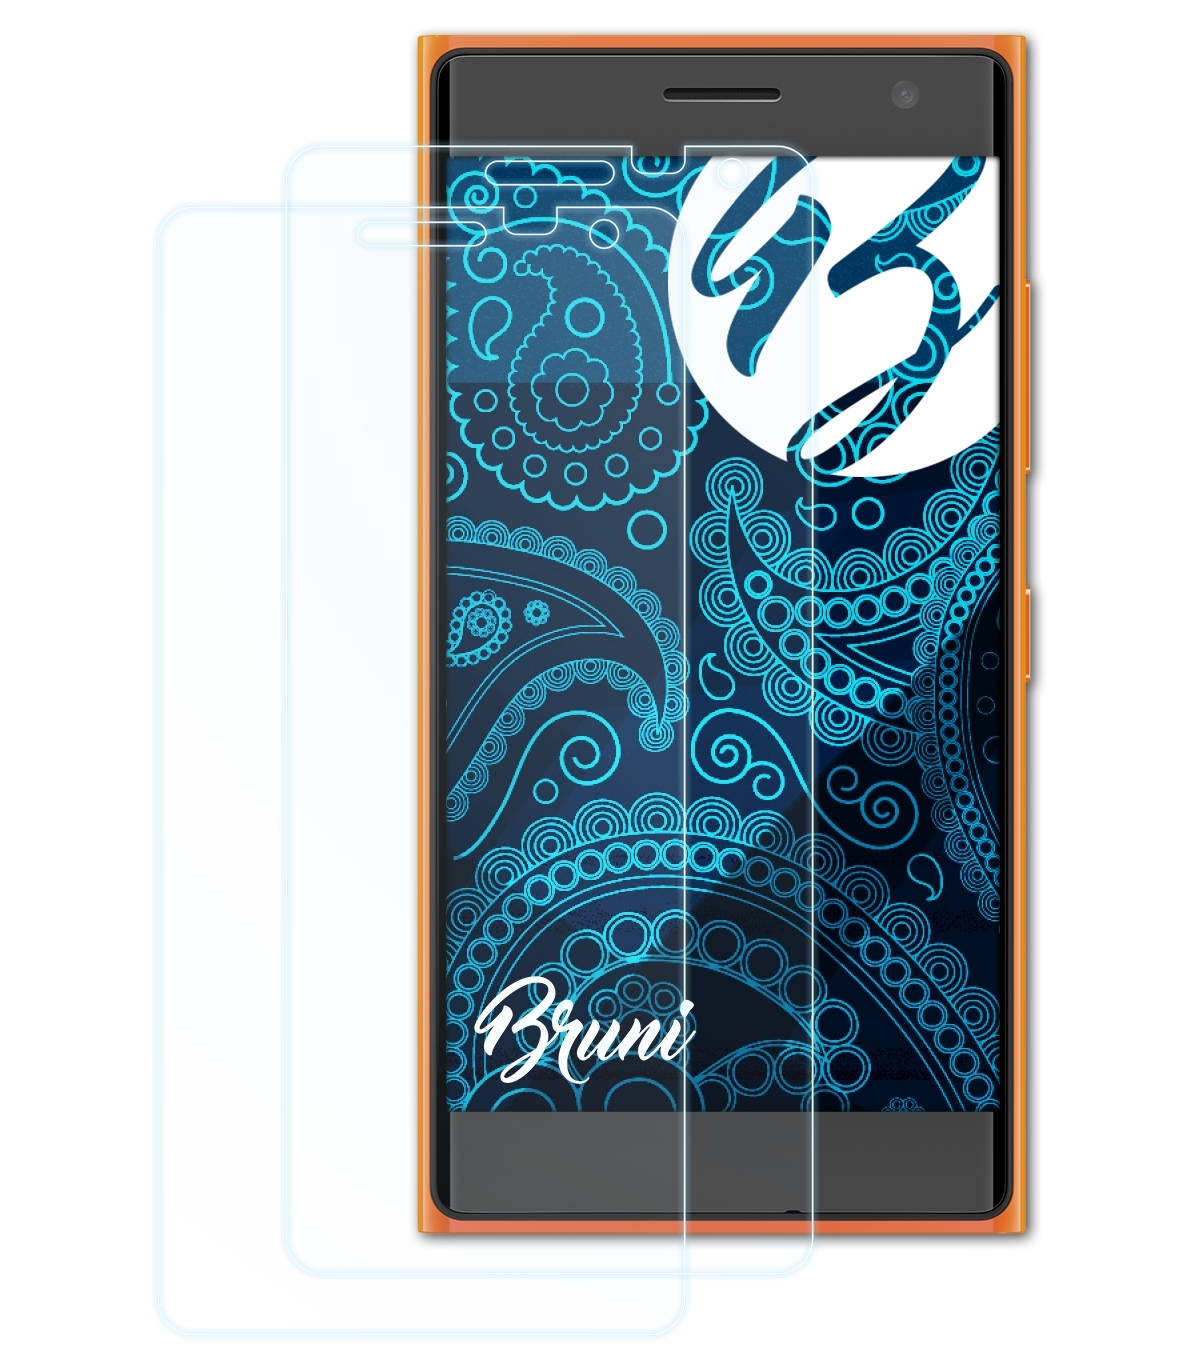 BRUNI 2x Basics-Clear Schutzfolie(für 730 / 735) Nokia Lumia